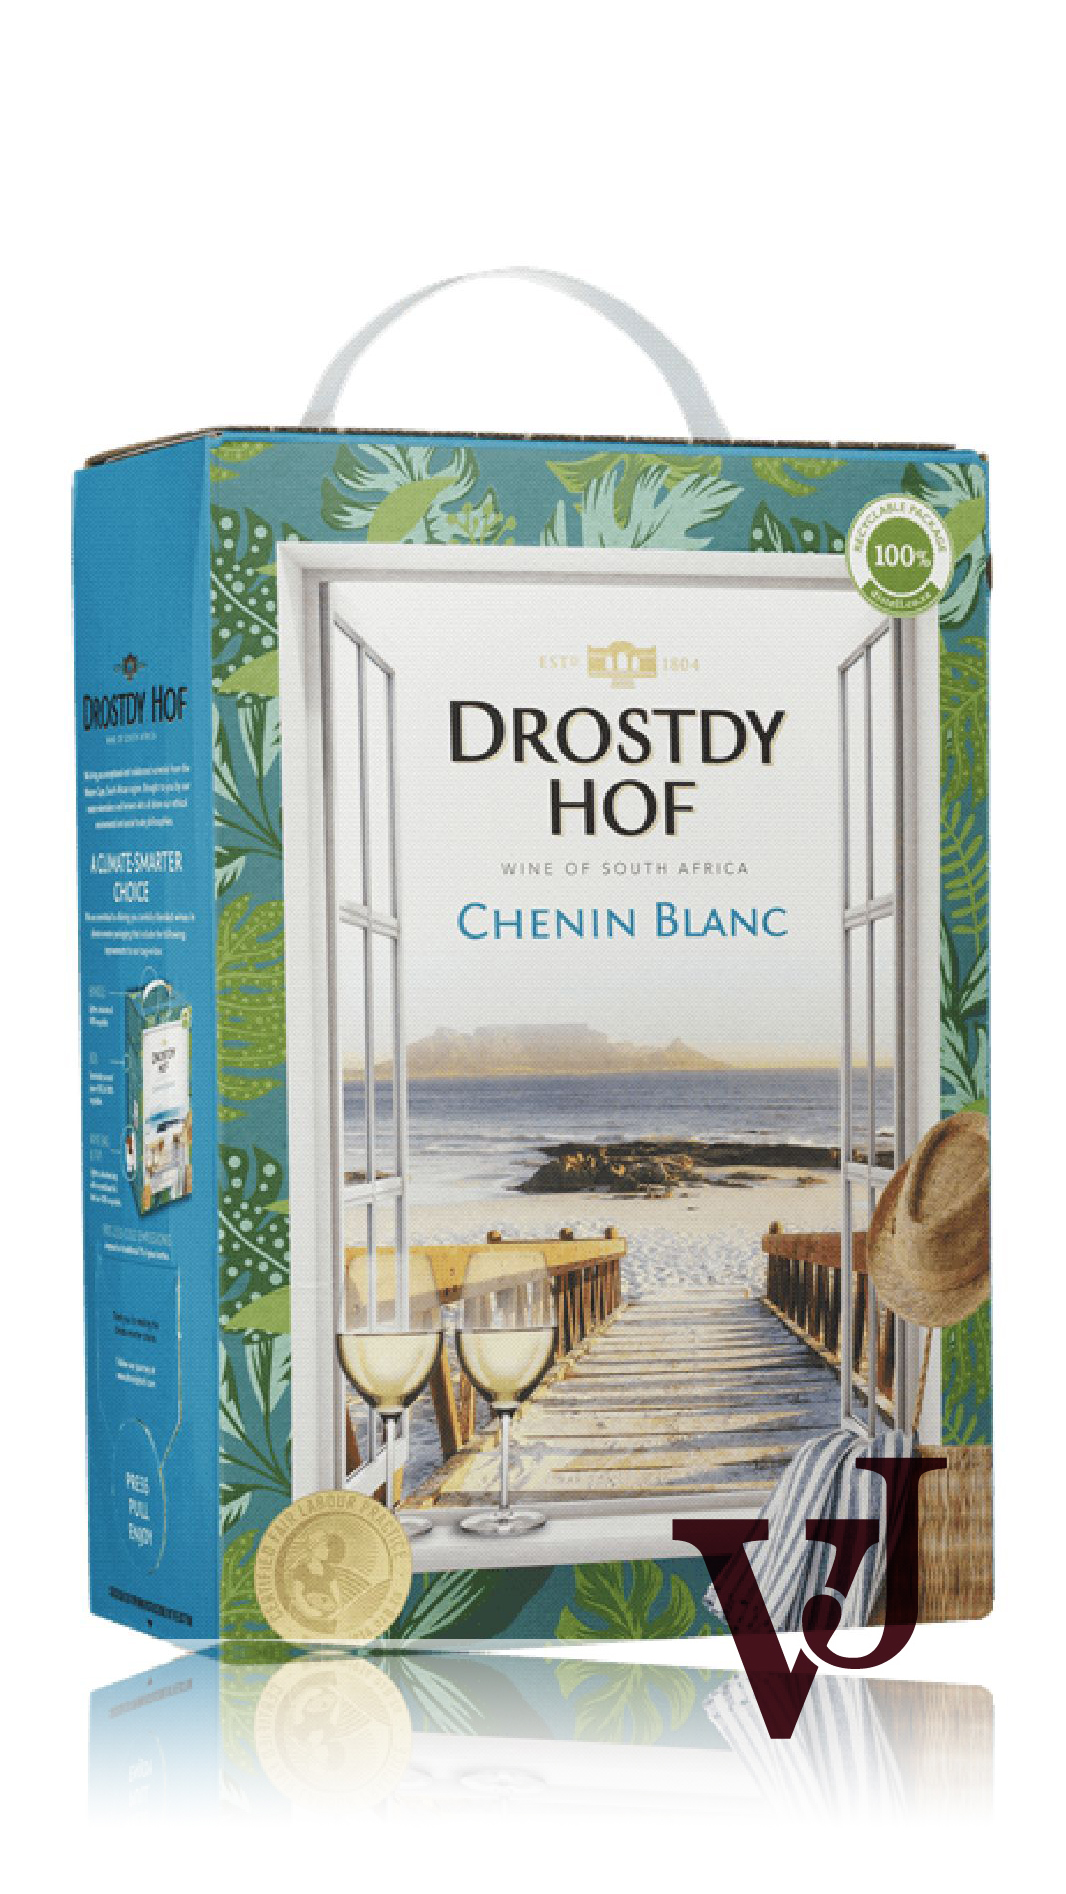 Vitt Vin - Drostdy-Hof Chenin Blanc artikel nummer 206908 från producenten Drostdy Cellars från området Sydafrika